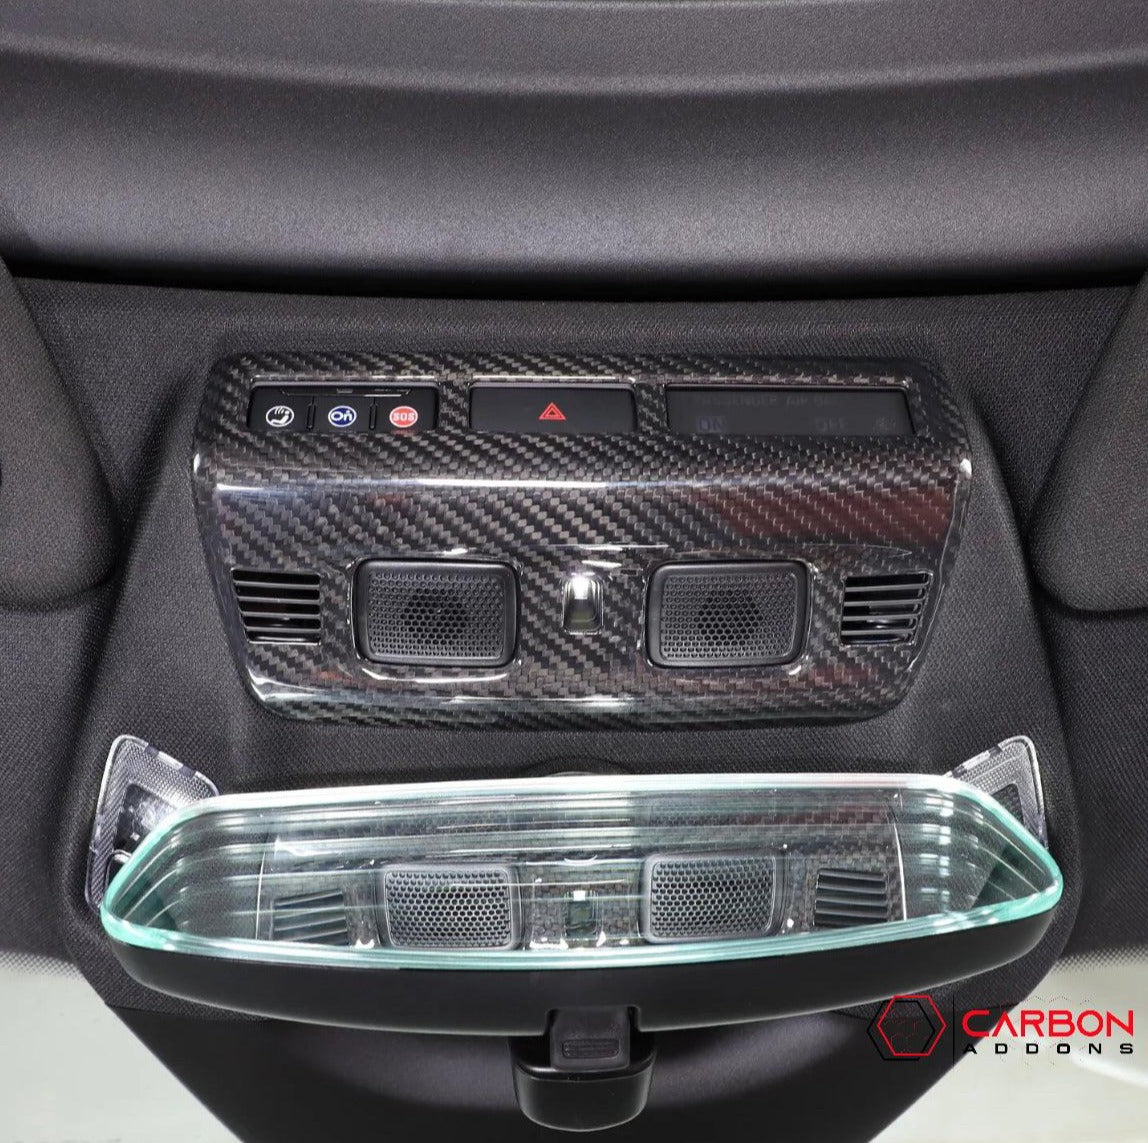 C8 Corvette Carbon Fiber Overhead Dome light trim Cover - carbonaddons Carbon Fiber Parts, Accessories, Upgrades, Mods